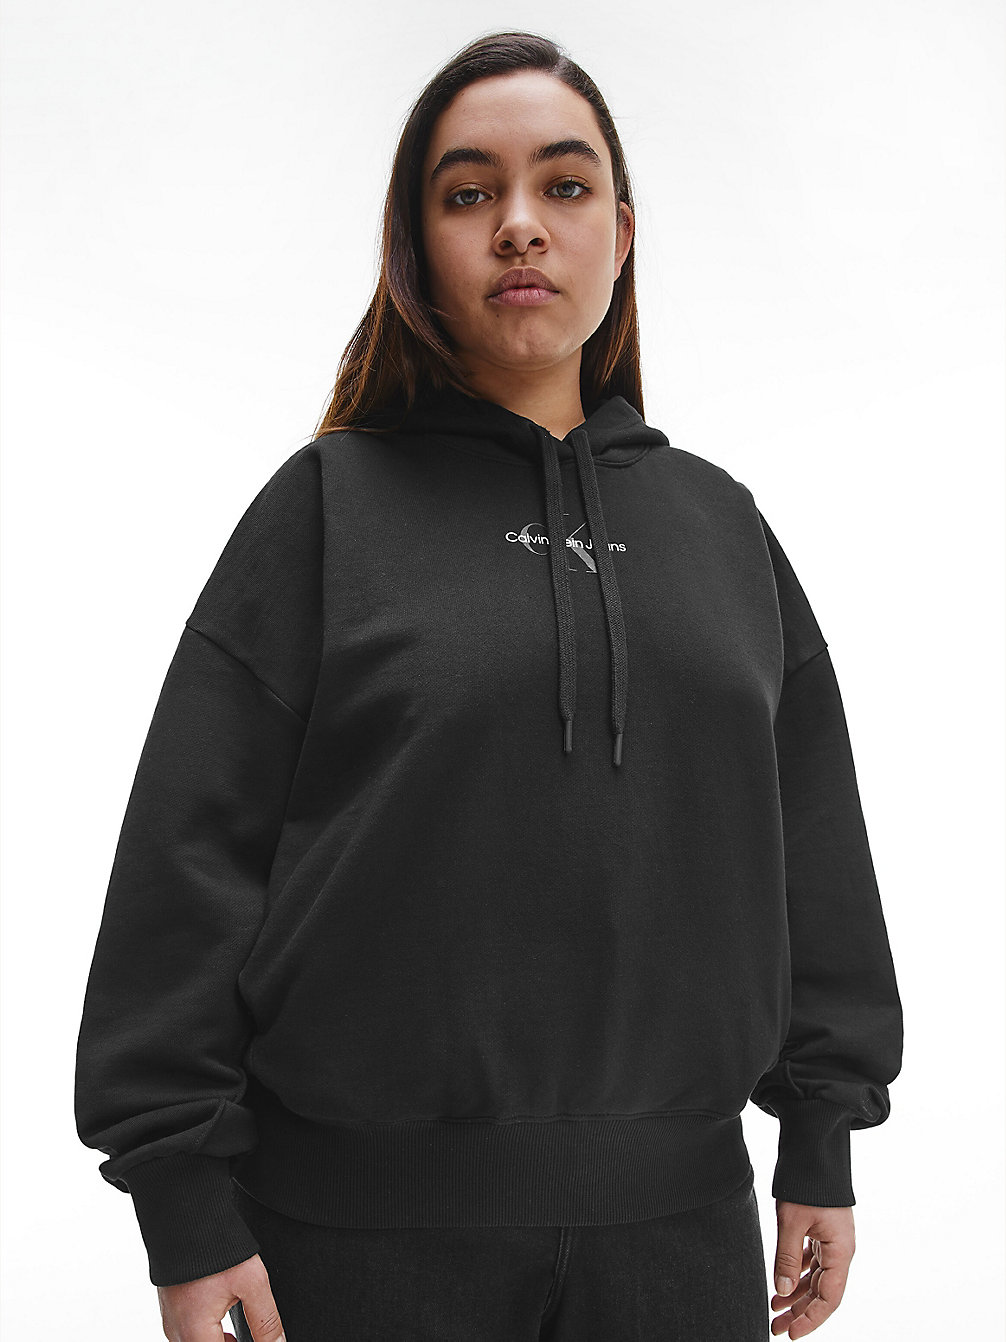 CK BLACK Plus Size Monogram Hoodie undefined women Calvin Klein